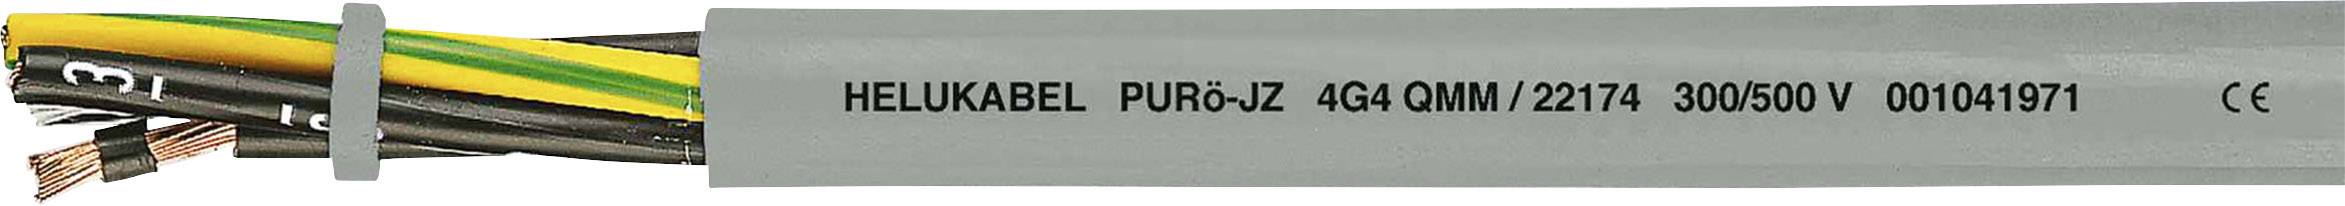 HELUKABEL PURö-JZ Steuerleitung 5 G 1.50 mm² Grau 22151-1000 1000 m